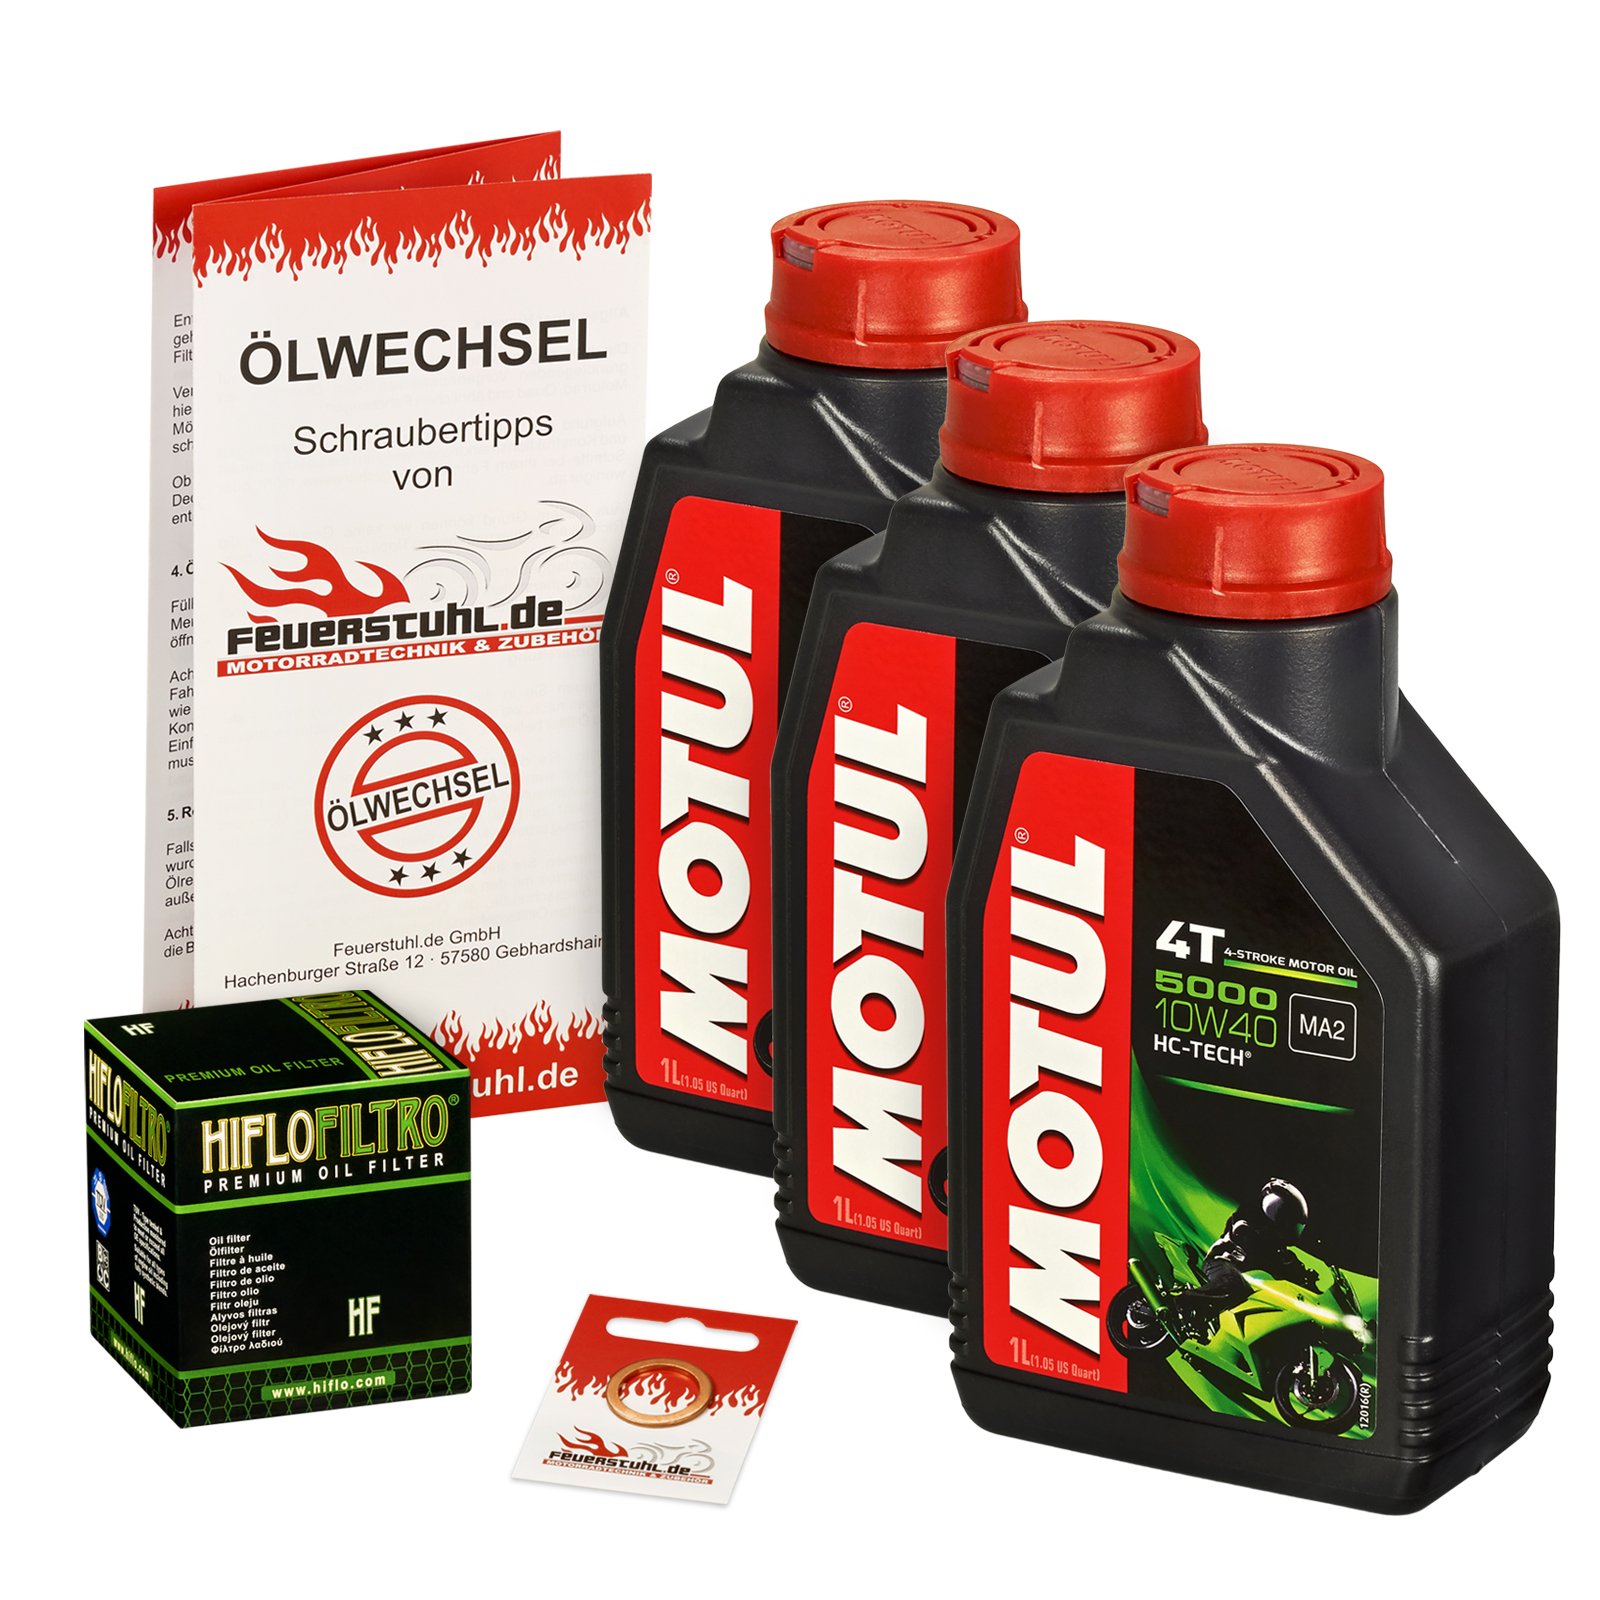 Motul 10W-40 Öl + HiFlo Ölfilter für Suzuki GSXR 750, 06-15, CF CW C4 - Ölwechselset inkl. Motoröl, Filter, Dichtring